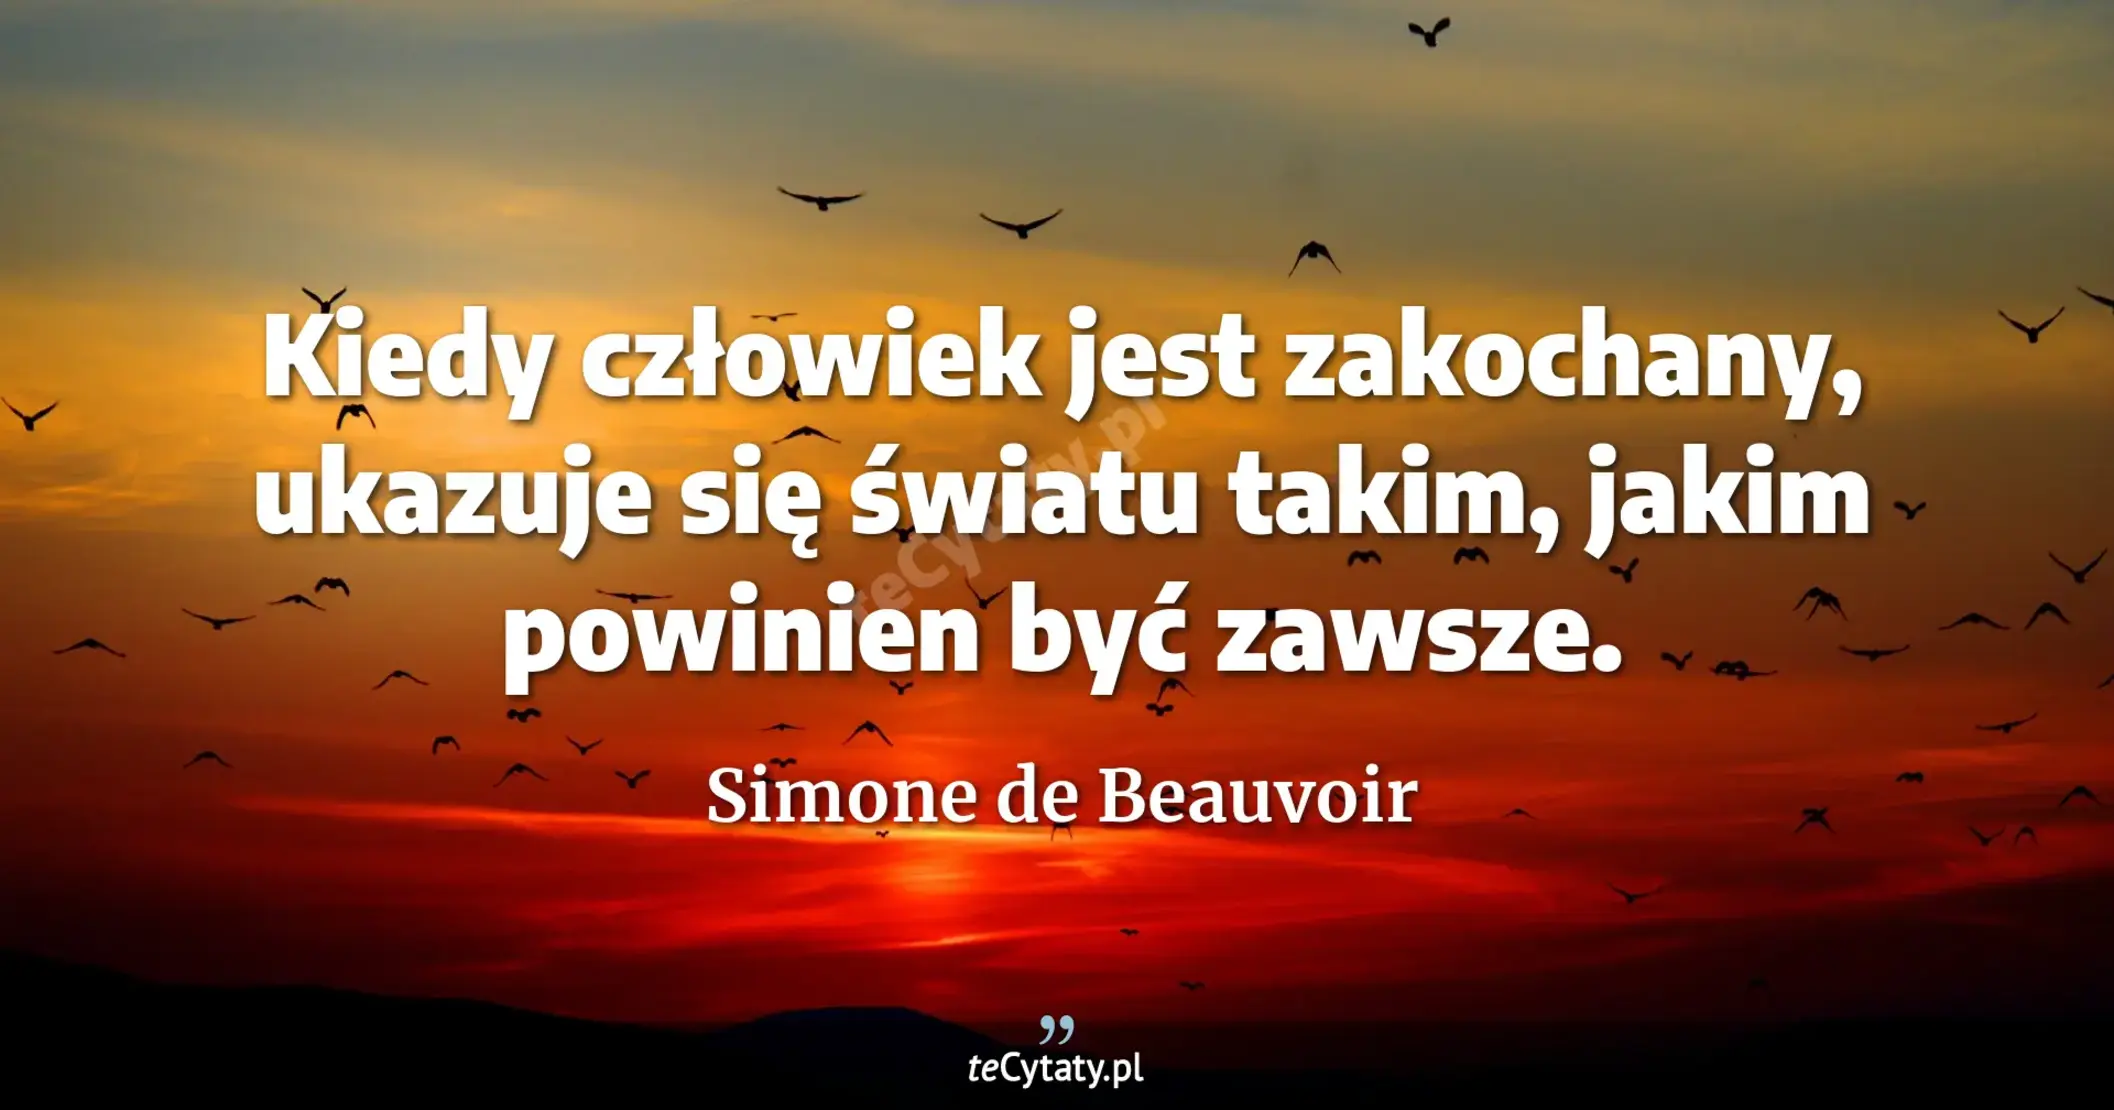 Kiedy człowiek jest zakochany, ukazuje się światu takim, jakim powinien być zawsze. - Simone de Beauvoir